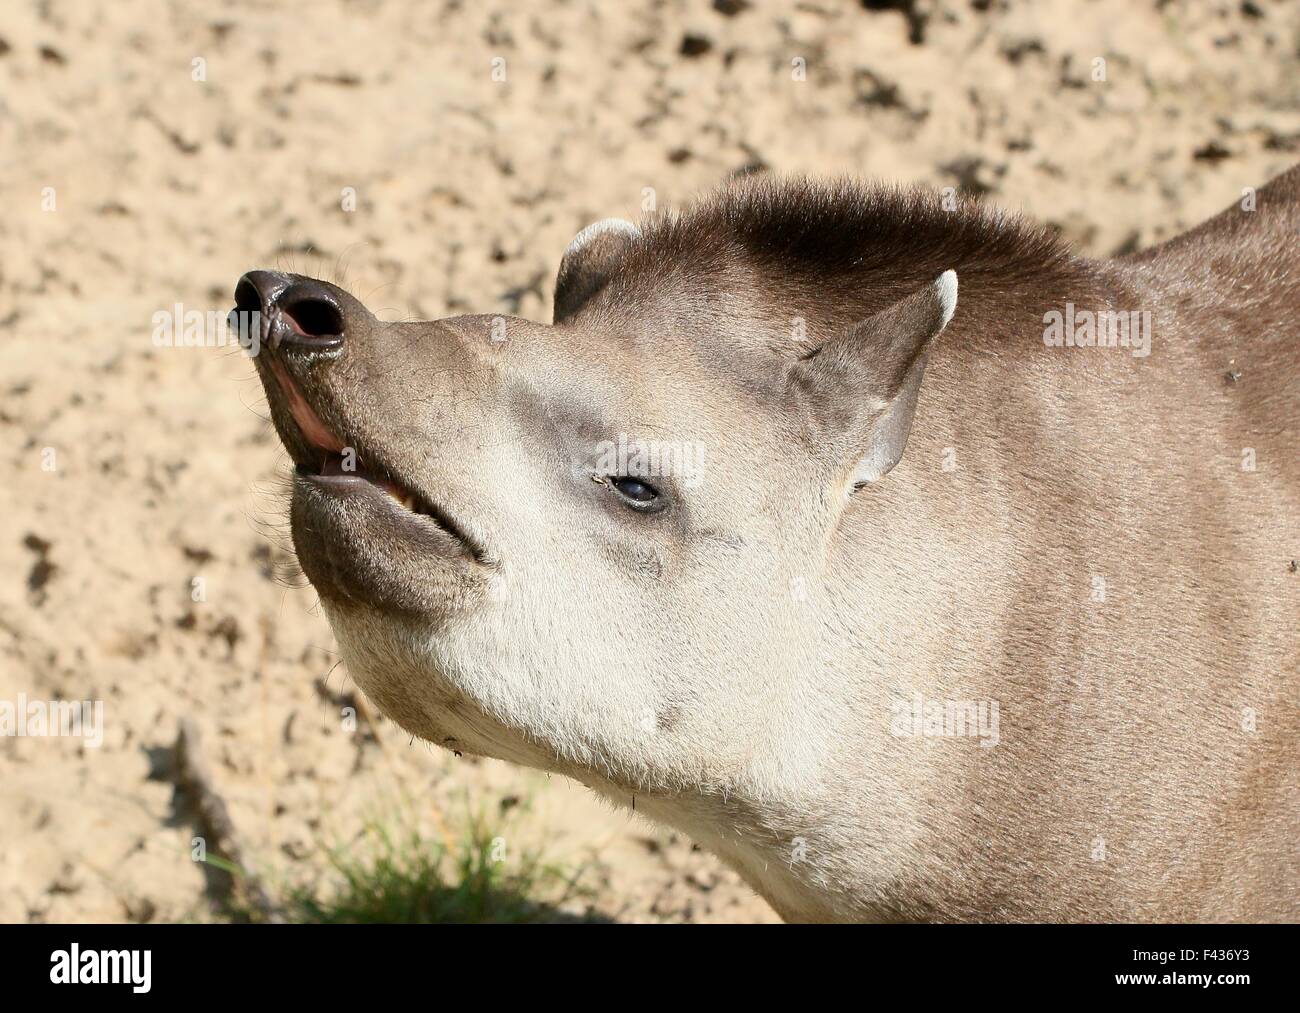 South American  Lowland Tapir or Brazilian Tapir (Tapirus terrestris) showing his mouth and large proboscis Stock Photo